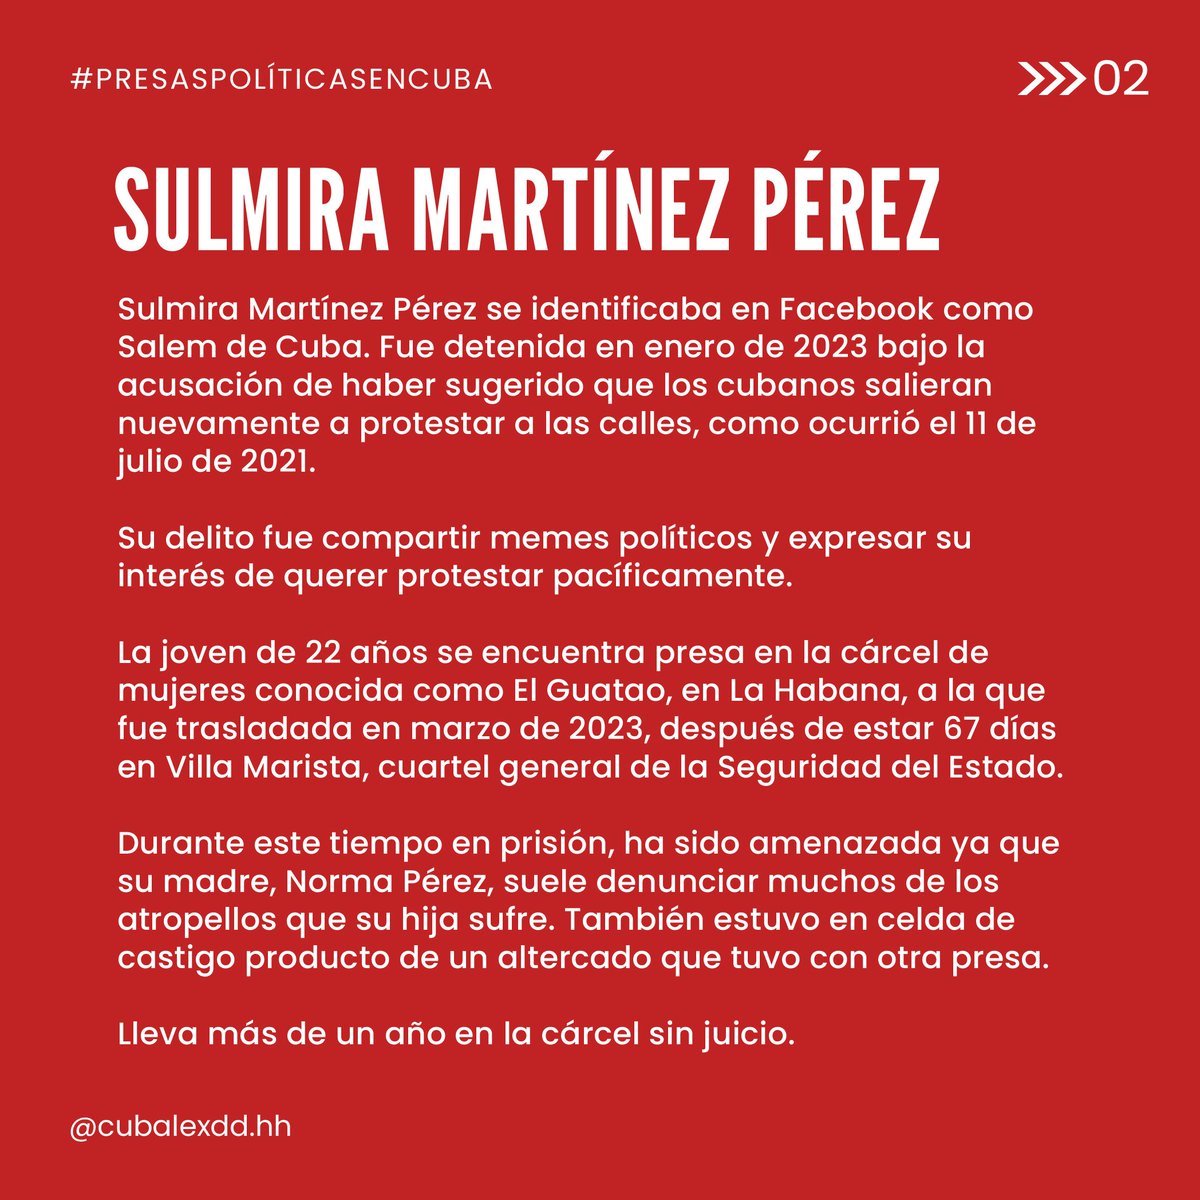 Sulmira Martínez Pérez se identificaba en Facebook como Salem de Cuba y fue detenida en enero de 2023. Desde entonces se encuentran en prisión sin que se haya realizado un juicio en su contra. Comparte nuestra campaña #DerechosNegados #MujeresPresasPolíticas #EllasNoEstánSolas